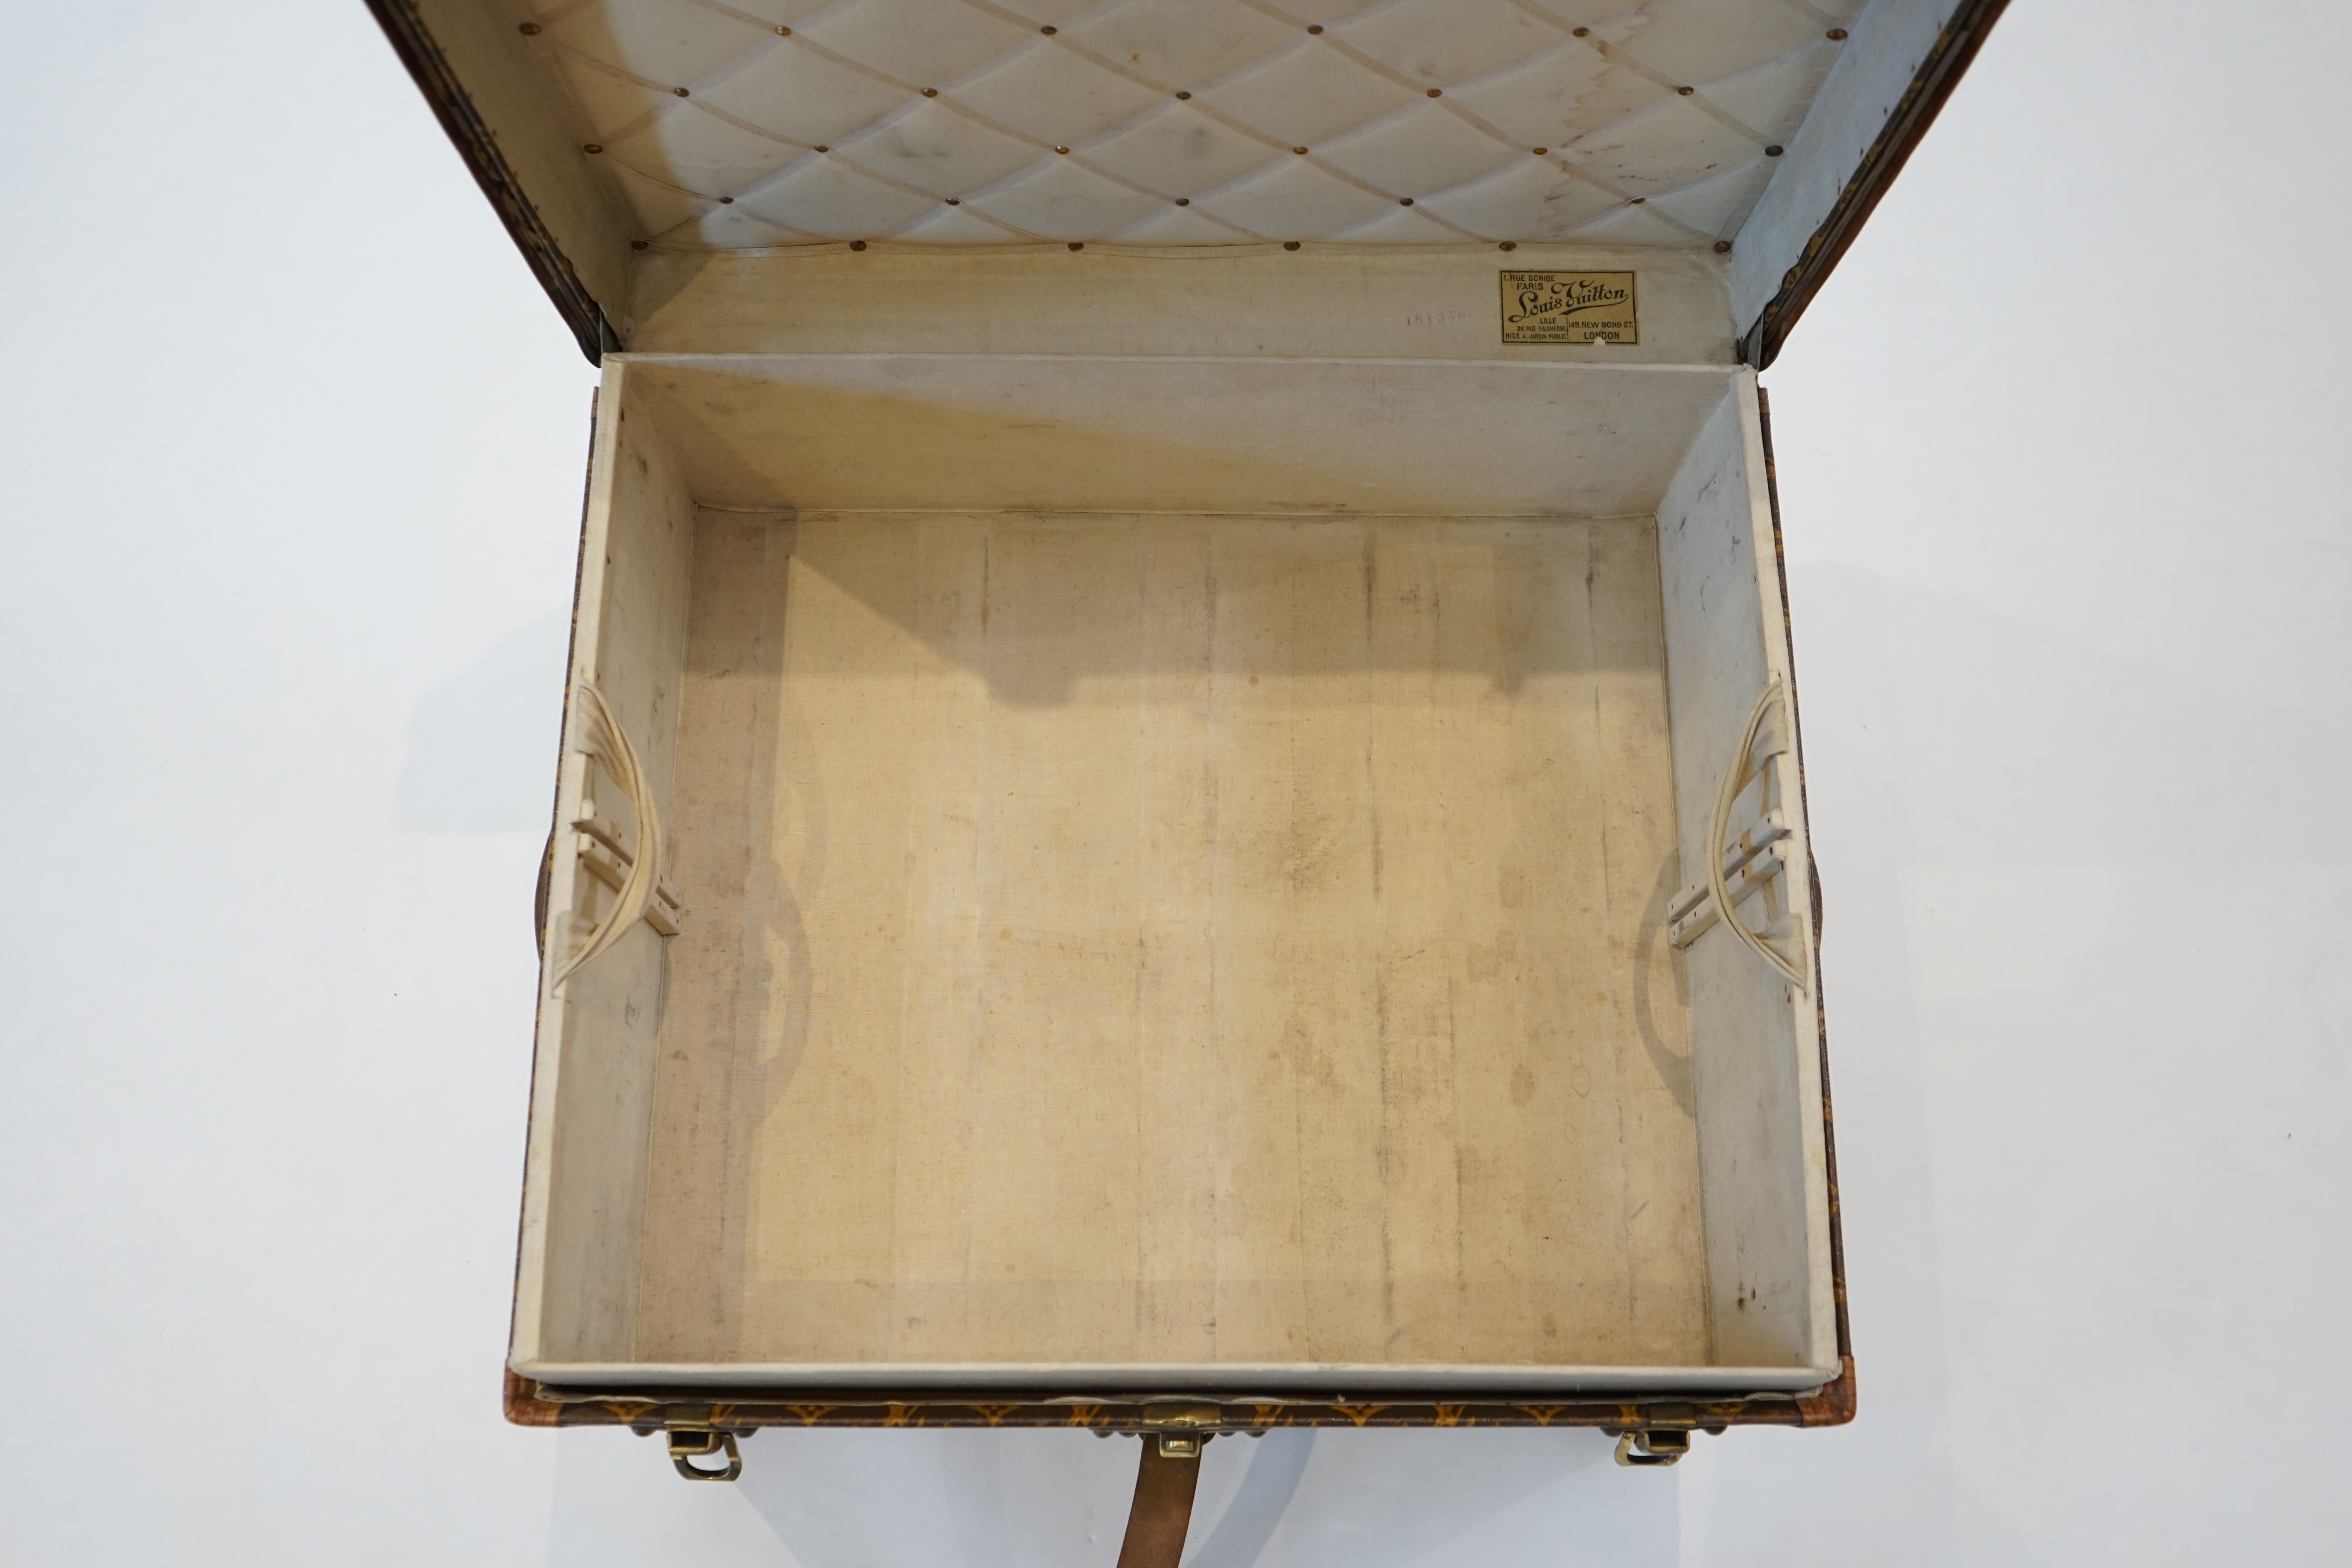 A vintage Louis Vuitton trunk width 61cm, depth 62cm, height 43cm